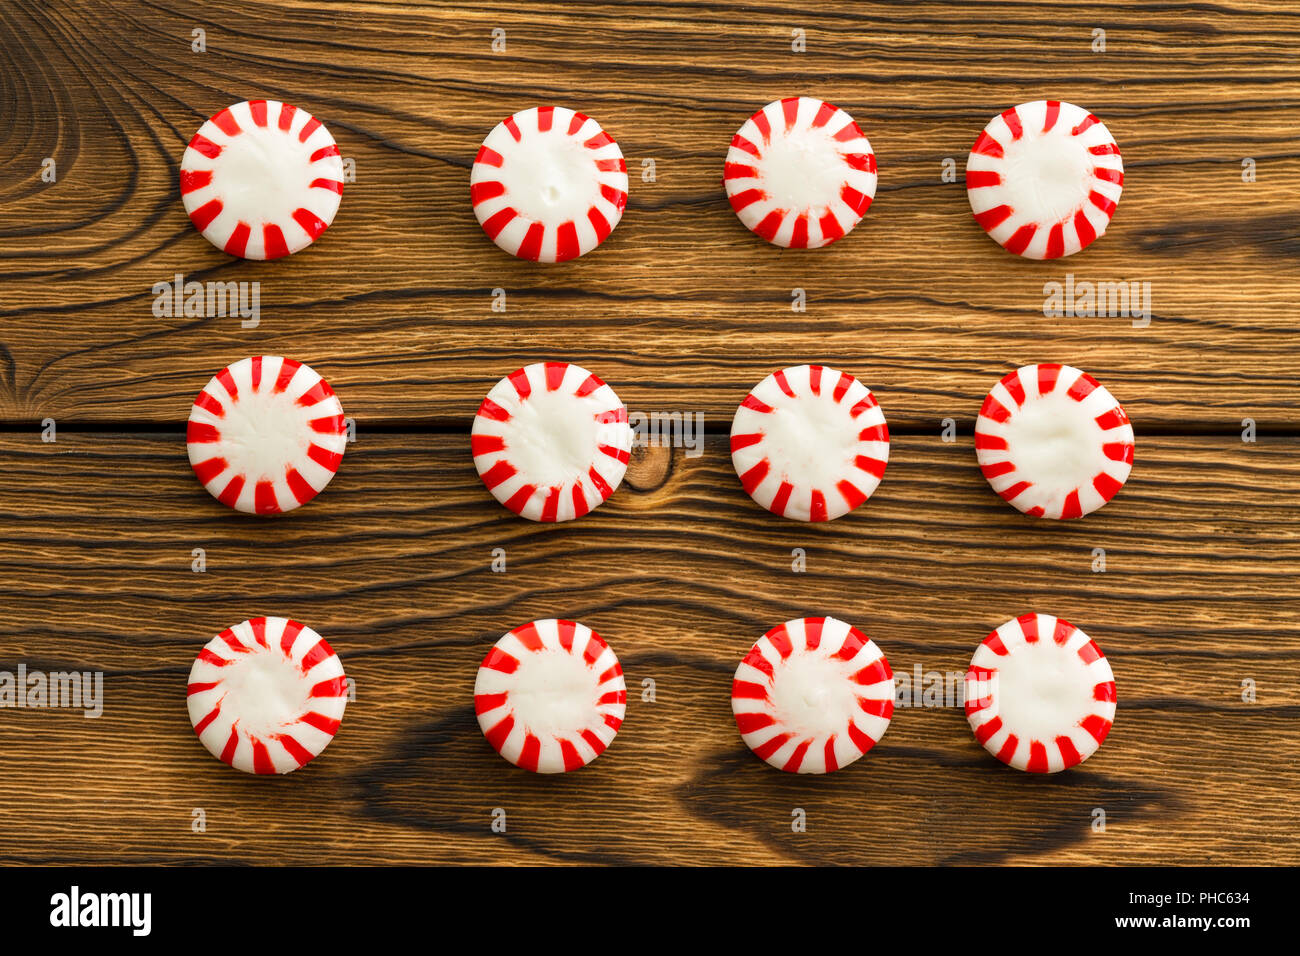 Belles rangées de populaires saveur menthe rouge et blanc bouilli bonbons starlight sur un fond de bois rustique Banque D'Images